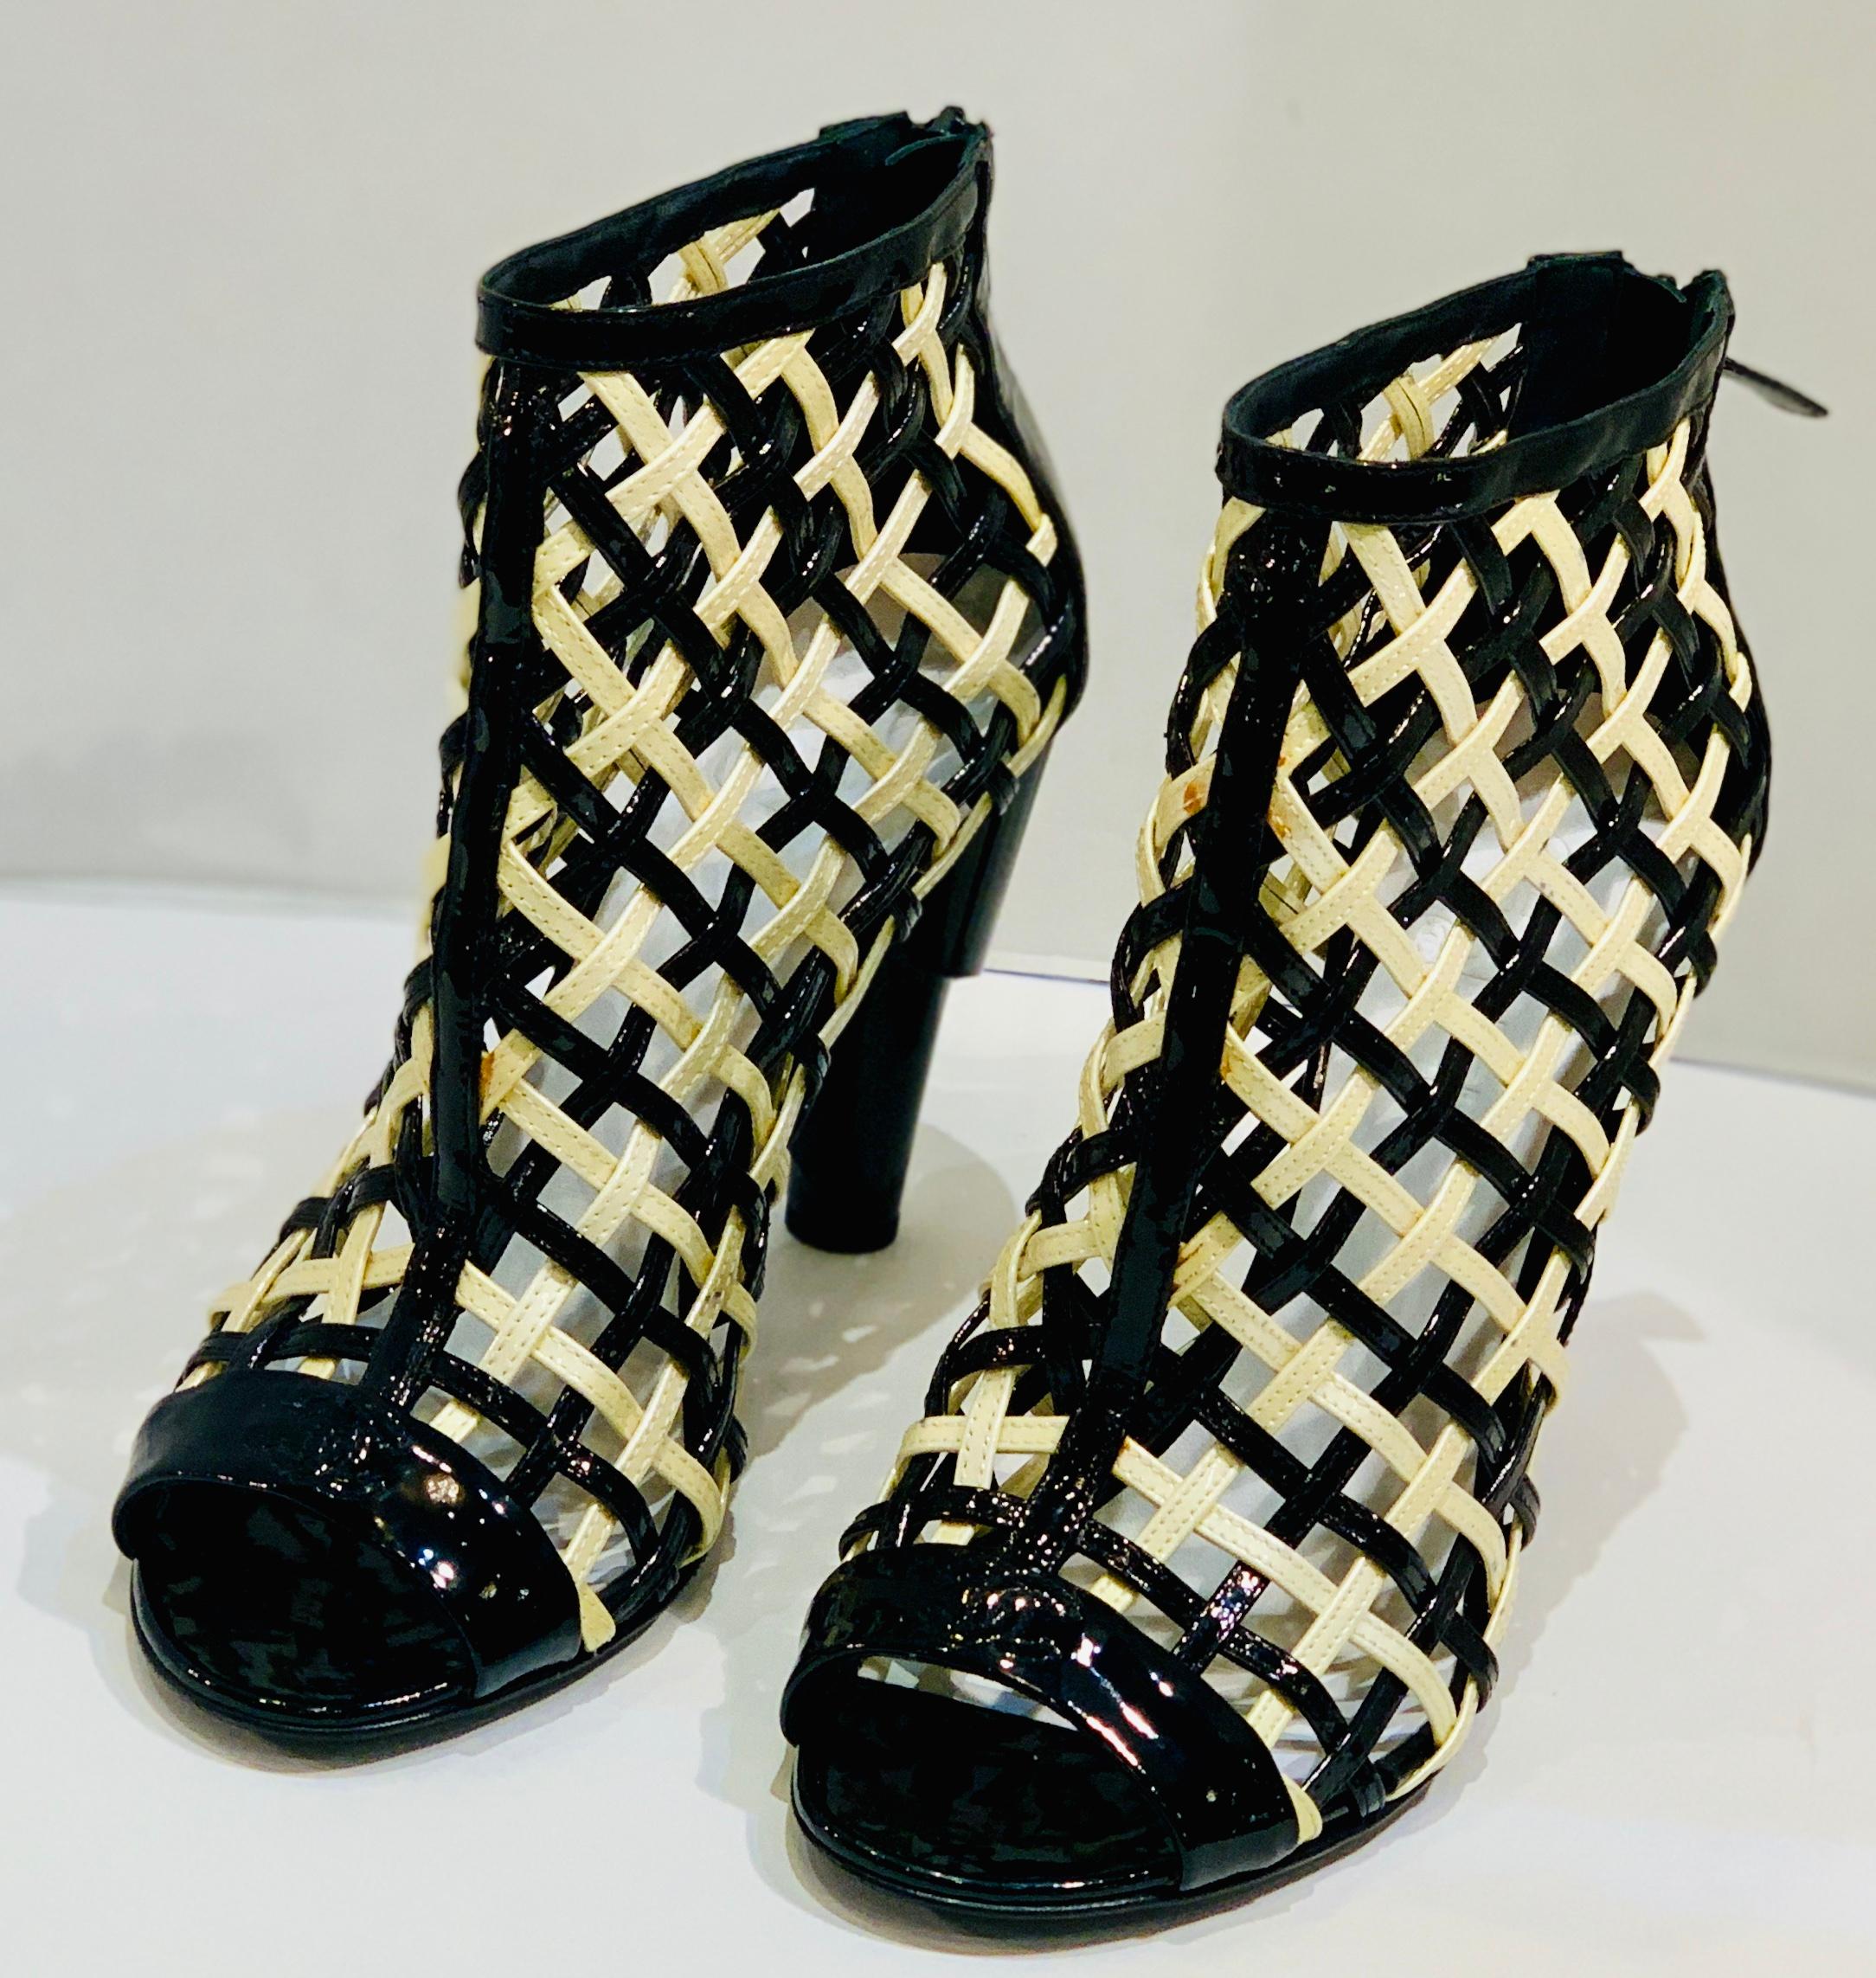 
Schwer zu finden Größe 11 oder 41, Chanel Schwarz und Weiß Lackleder Käfig Peep Toe Booties Schuhe aus der Frühjahr 2015 Laufsteg-Kollektion der legendären Luxusmarke Chanel. Diese ausgefallenen, knöchelhohen Stiefel sind aus glänzendem Lackleder